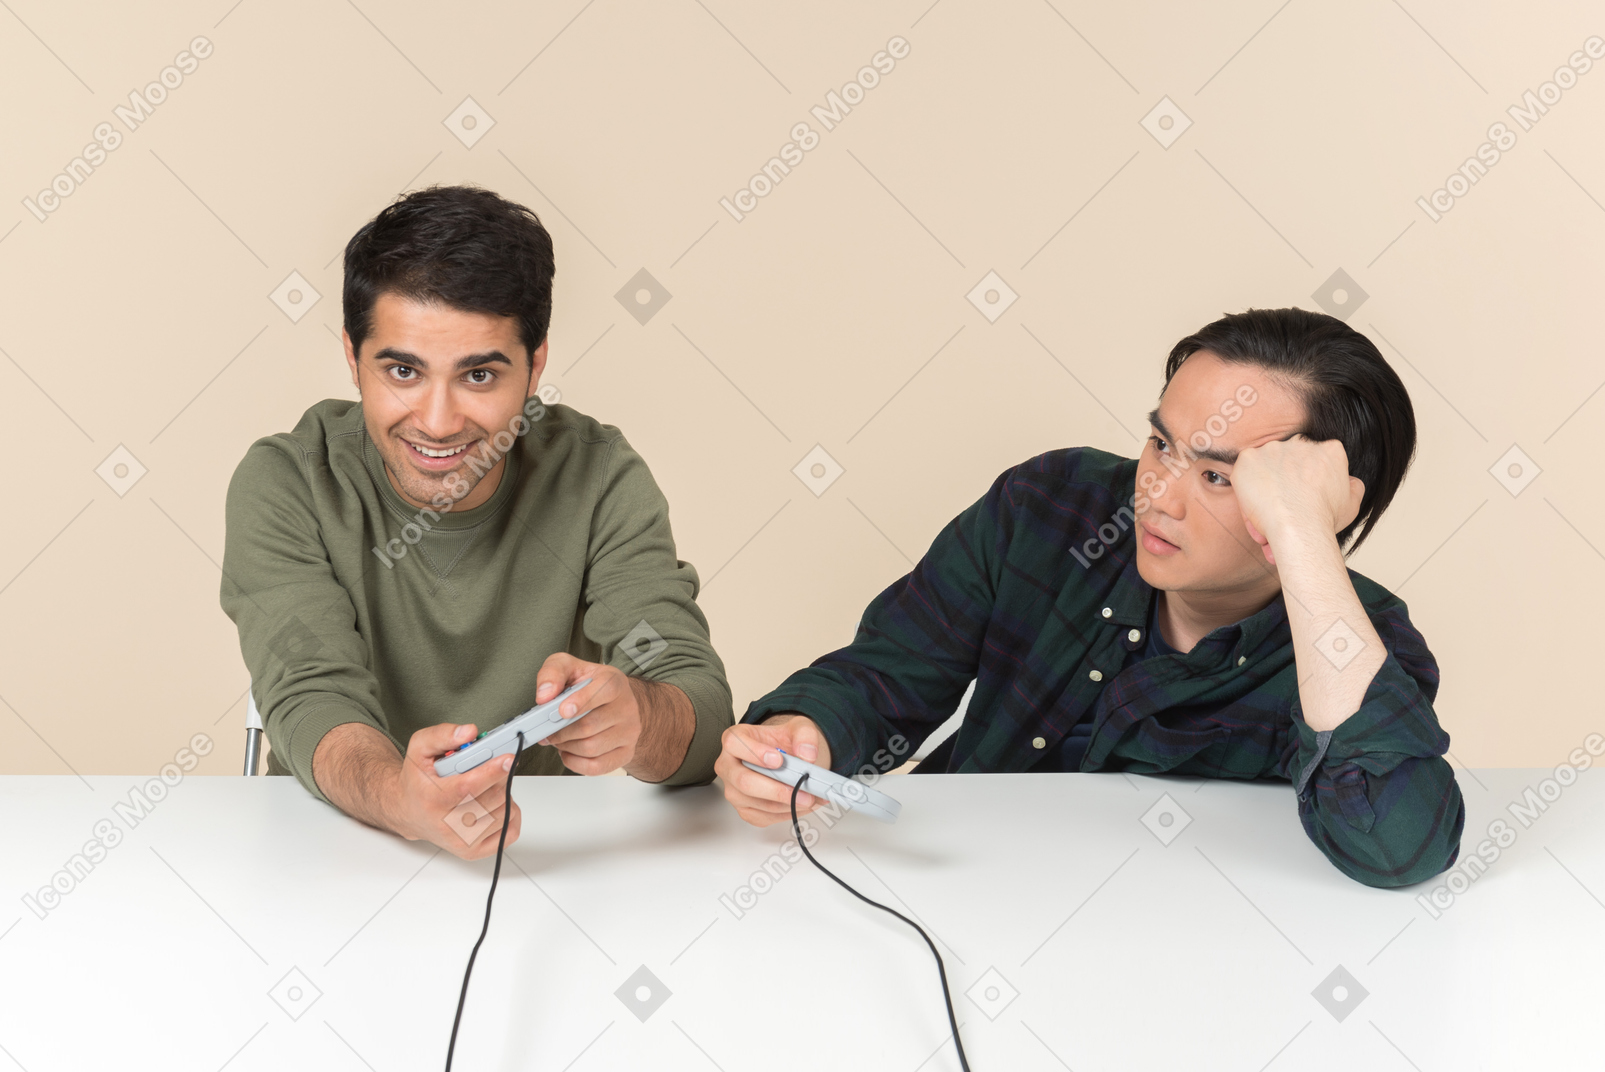 Amigos inter-raciais jogando videogame e um deles parece irritado